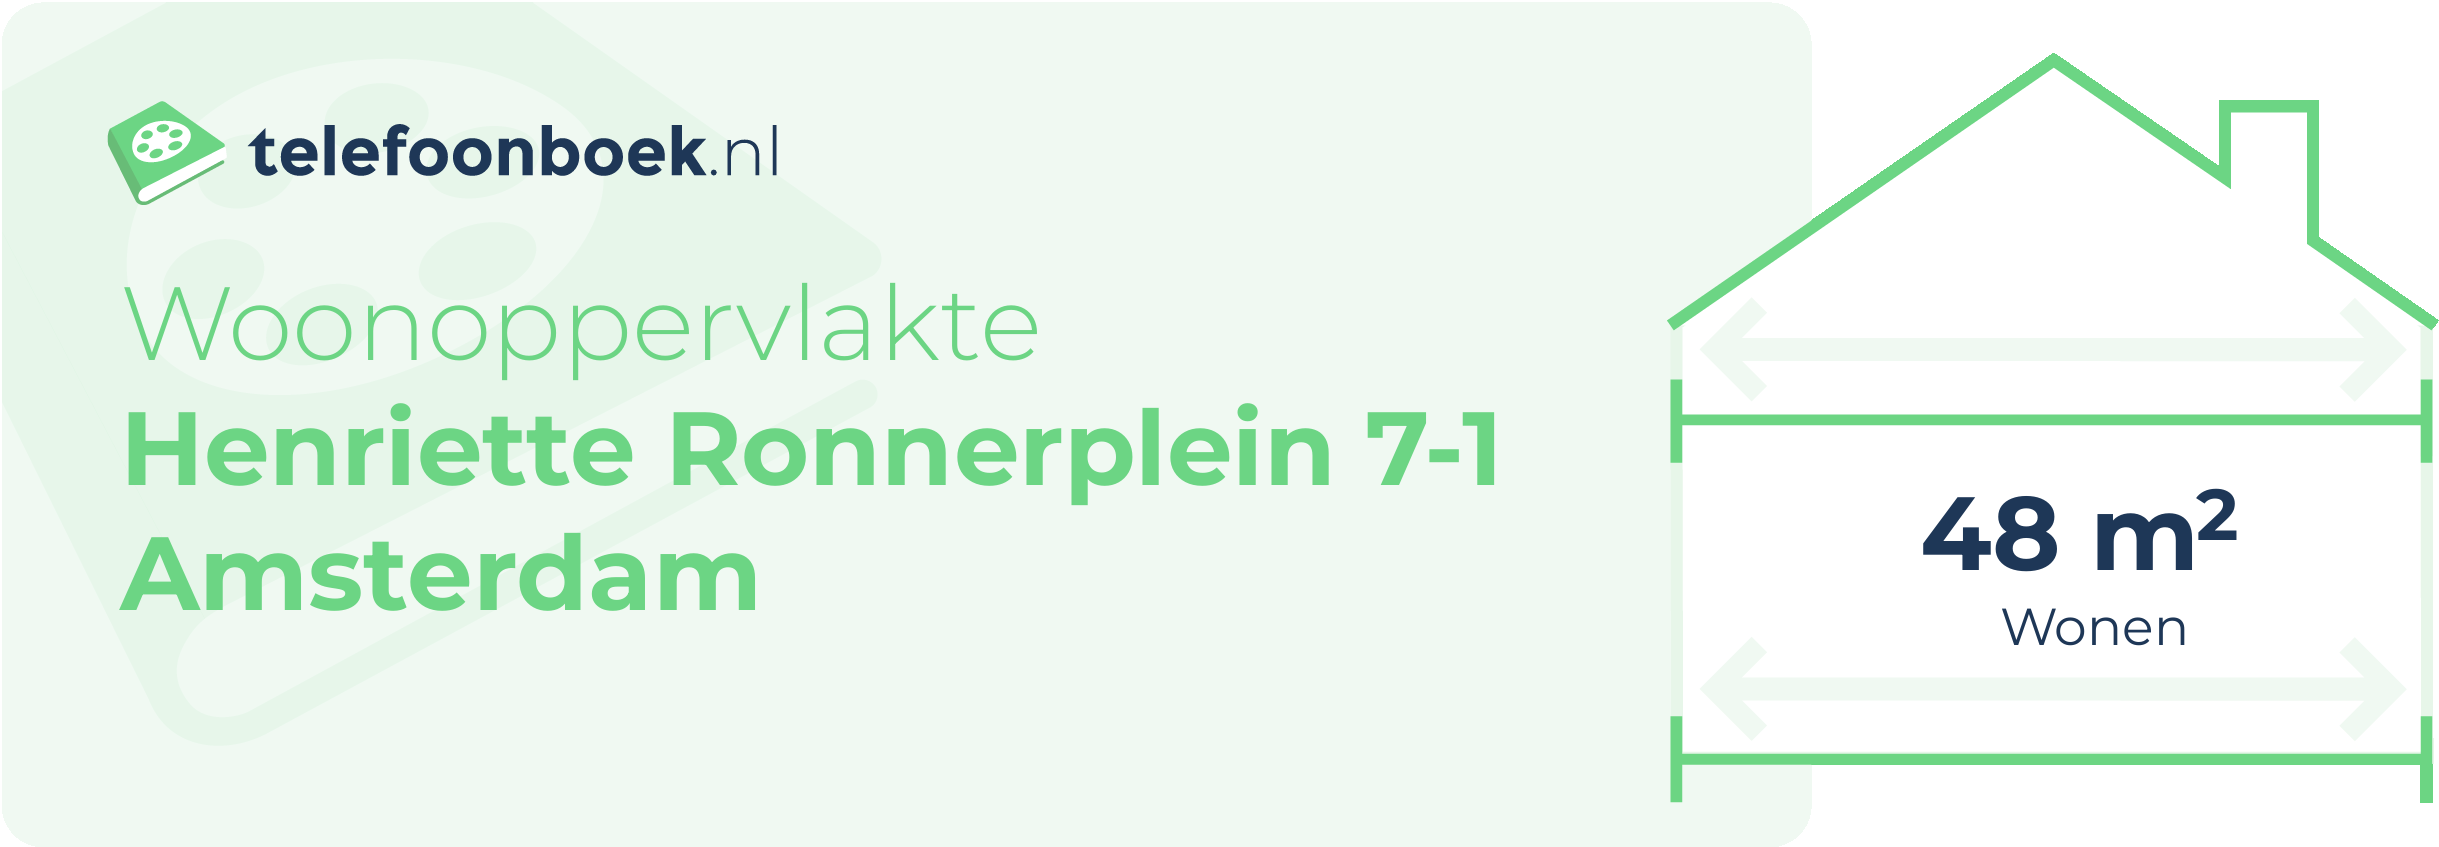 Woonoppervlakte Henriette Ronnerplein 7-1 Amsterdam